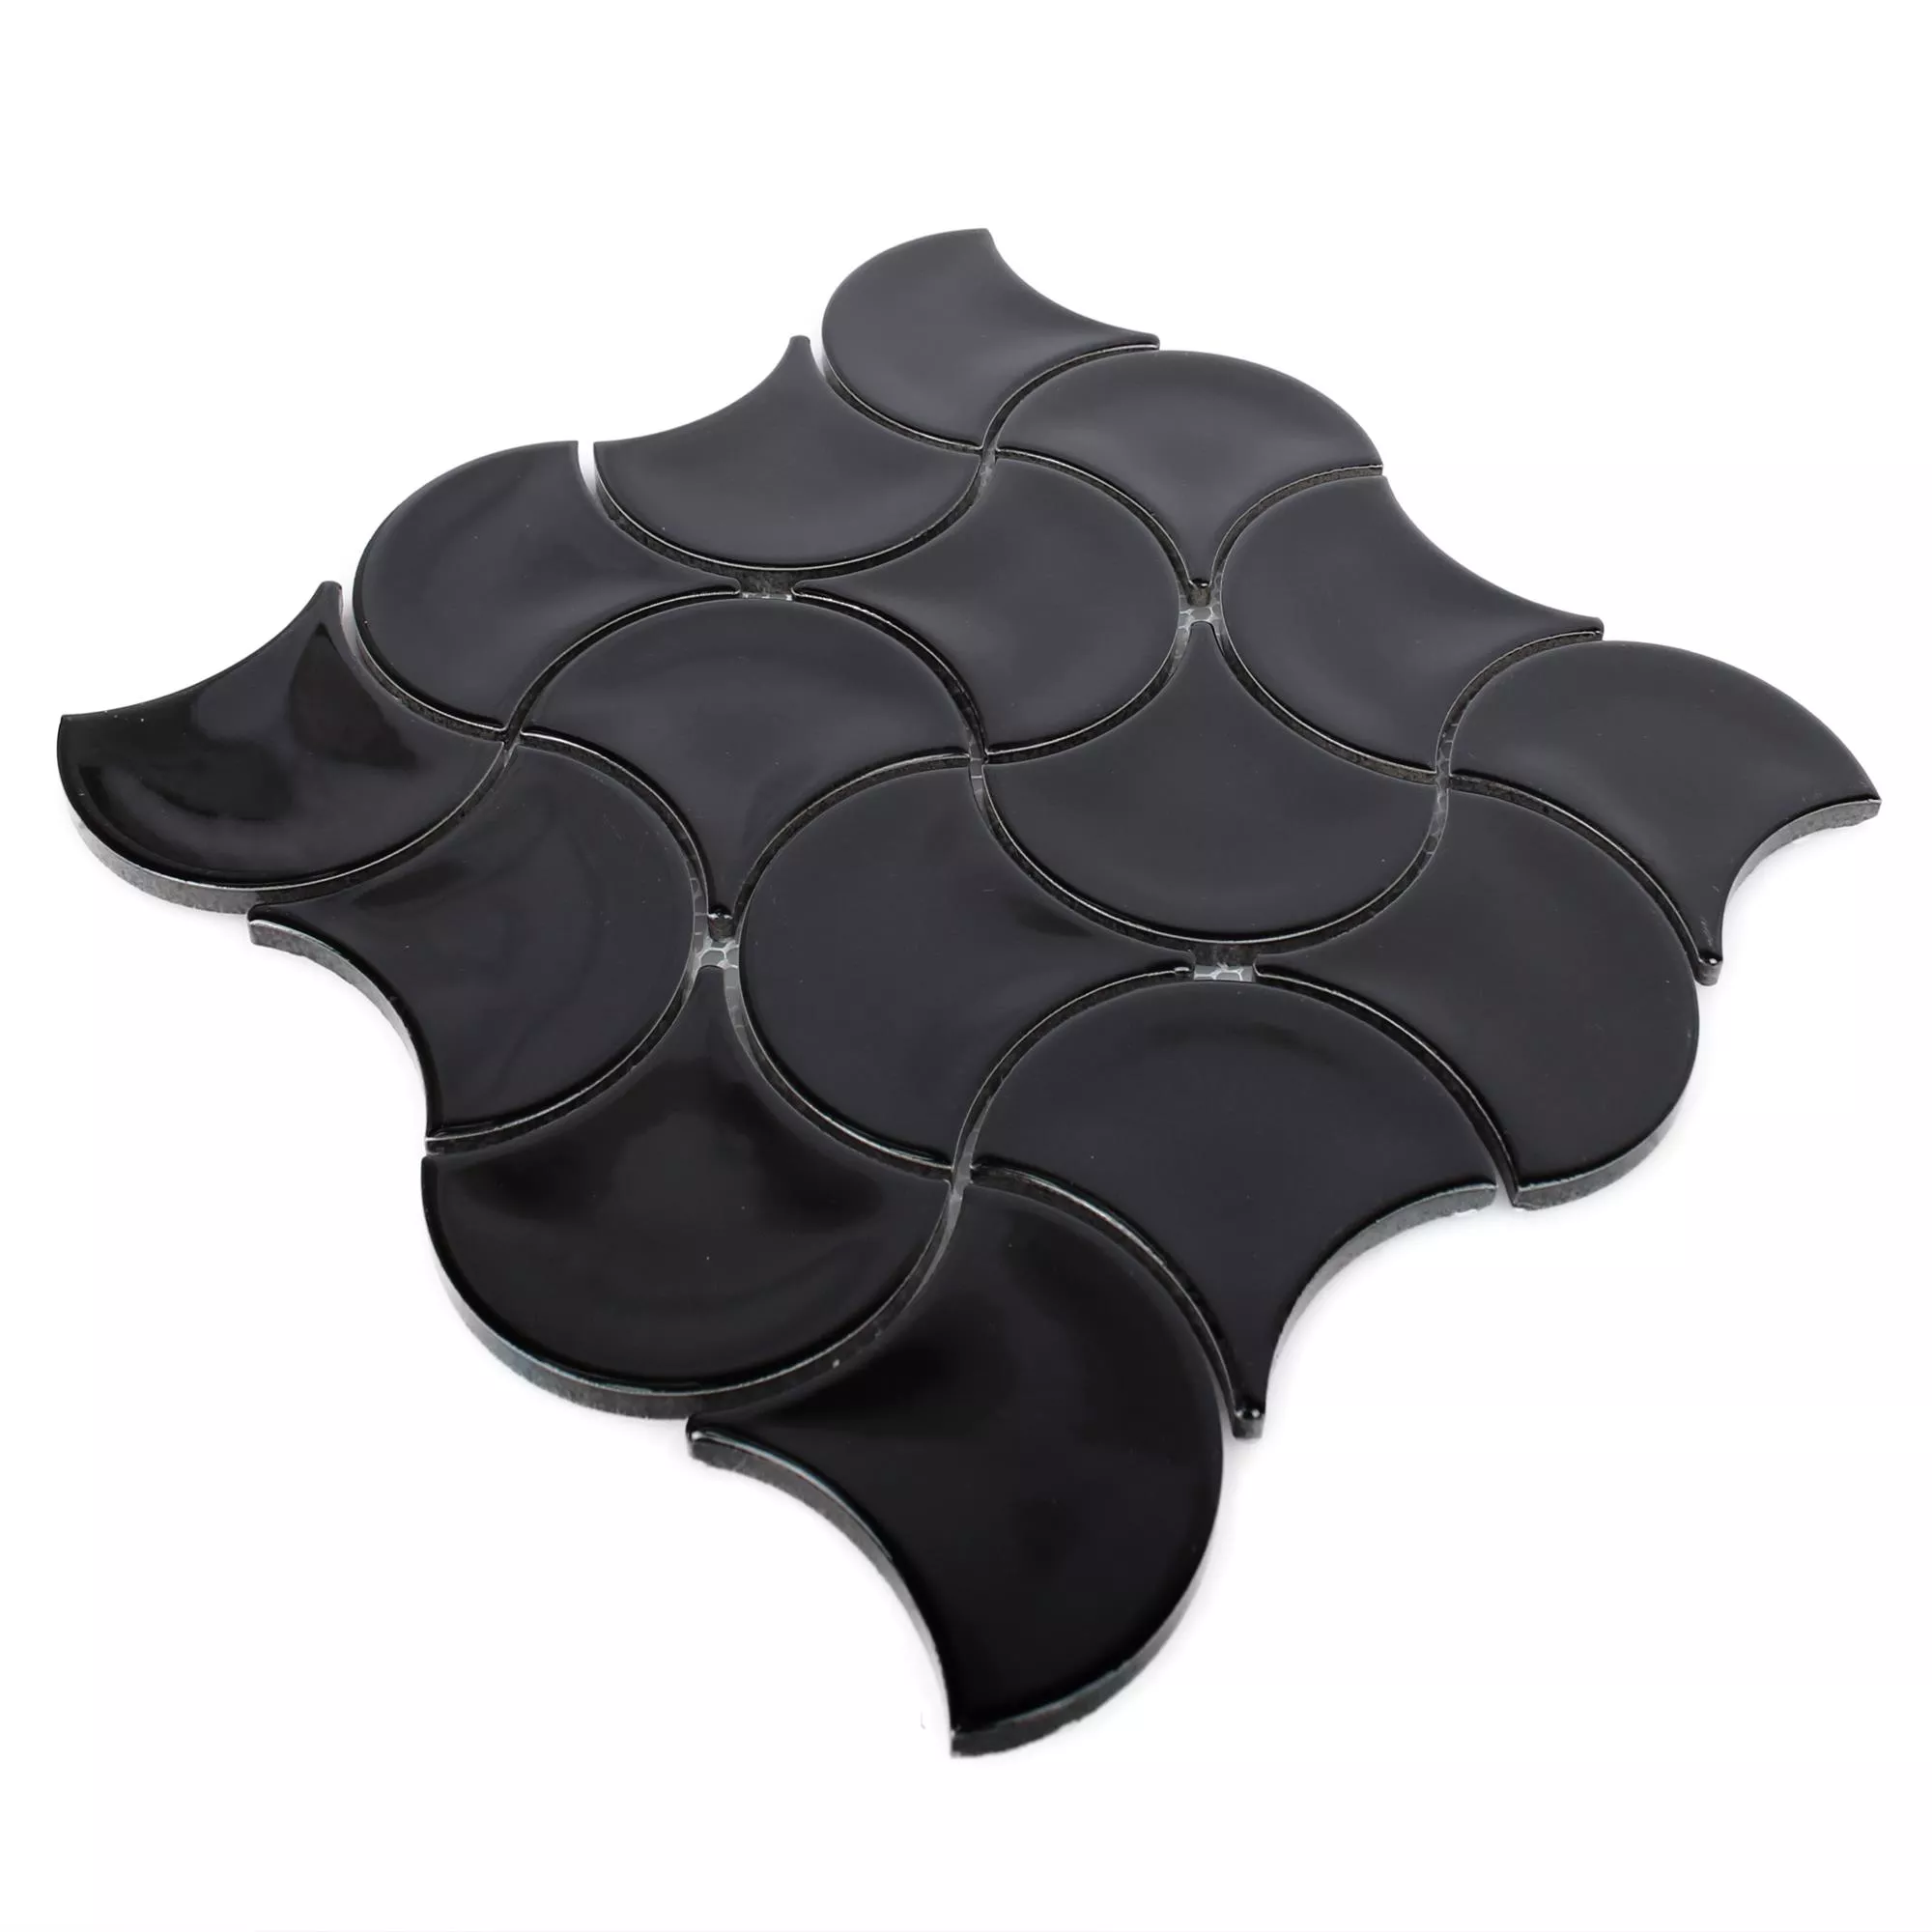 Ceramic Mosaic Tiles Toledo Wave Black